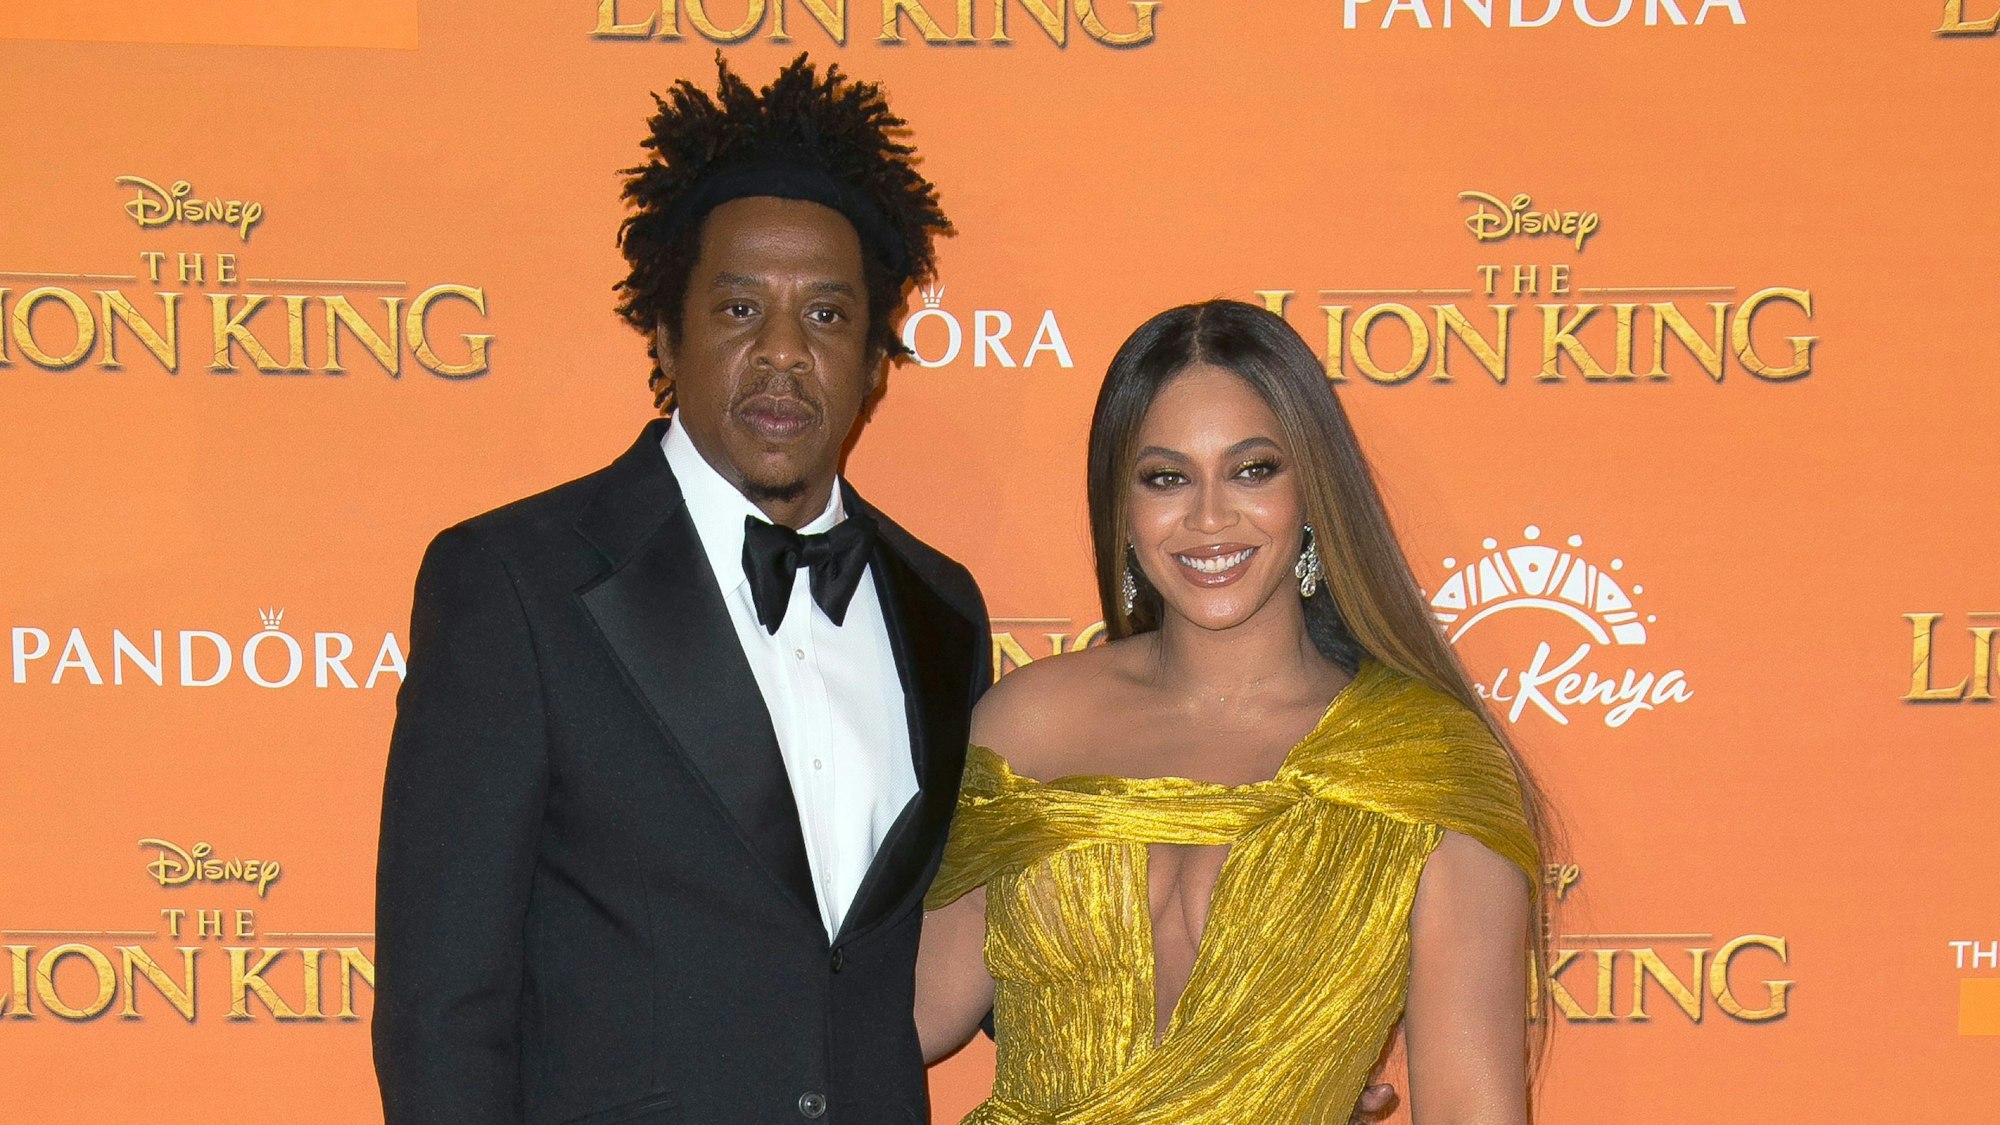 Die Sänger Jay-Z und Beyonce lächeln bei ihrer Ankunft zur "Lion King"-Premiere. Sie geht mit den meisten Gewinnchancen in die kommende Grammy-Preisverleihung. Beyonce und ihr Ehemann und Rapper Jay-Z hätten nun beide jeweils in ihrer Karriere insgesamt 88 Grammy-Nominierungen eingeheimst - und damit mehr als jeder andere Musik-Star.